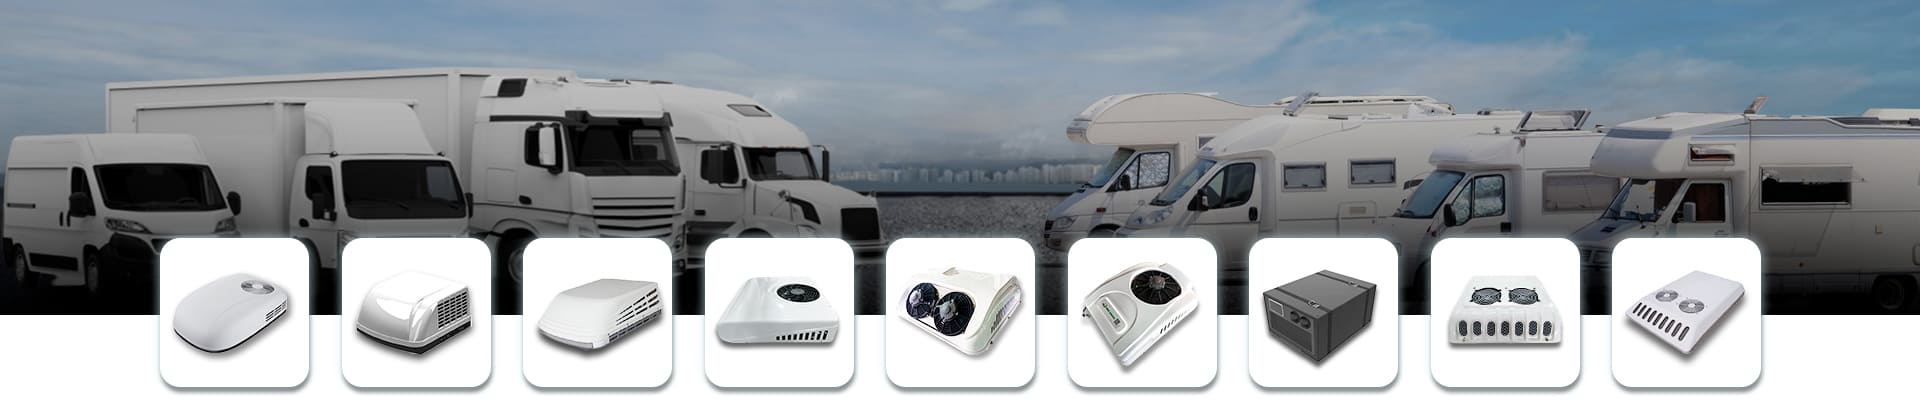 Explore Caravan/RV Air Conditioners Series